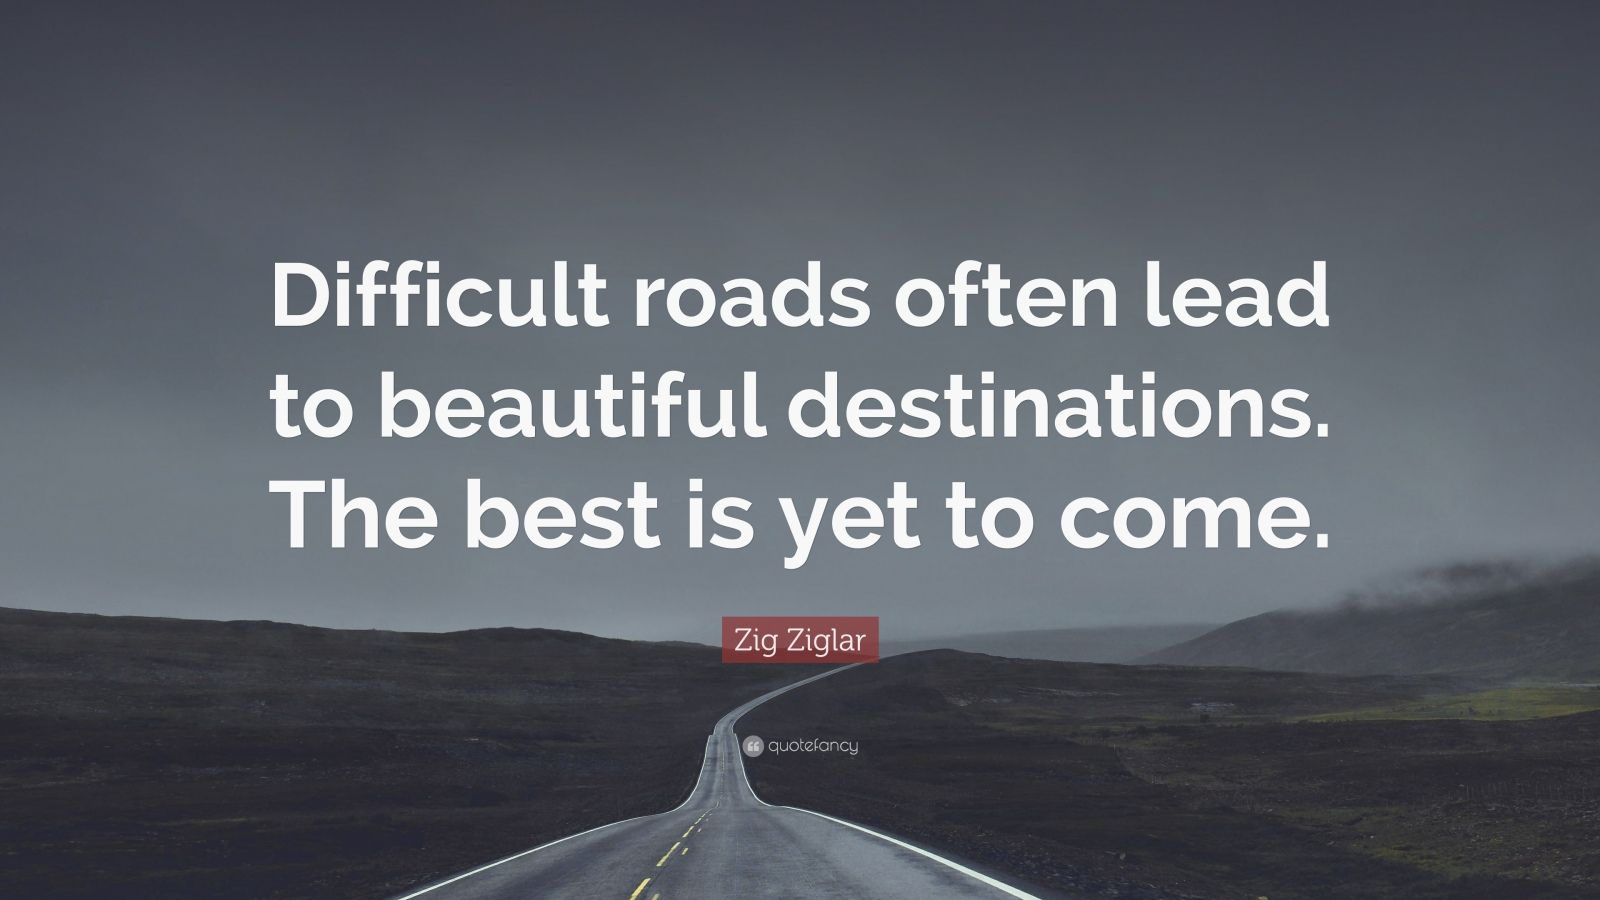 Zig Ziglar Quote: “Difficult roads often lead to beautiful destinations